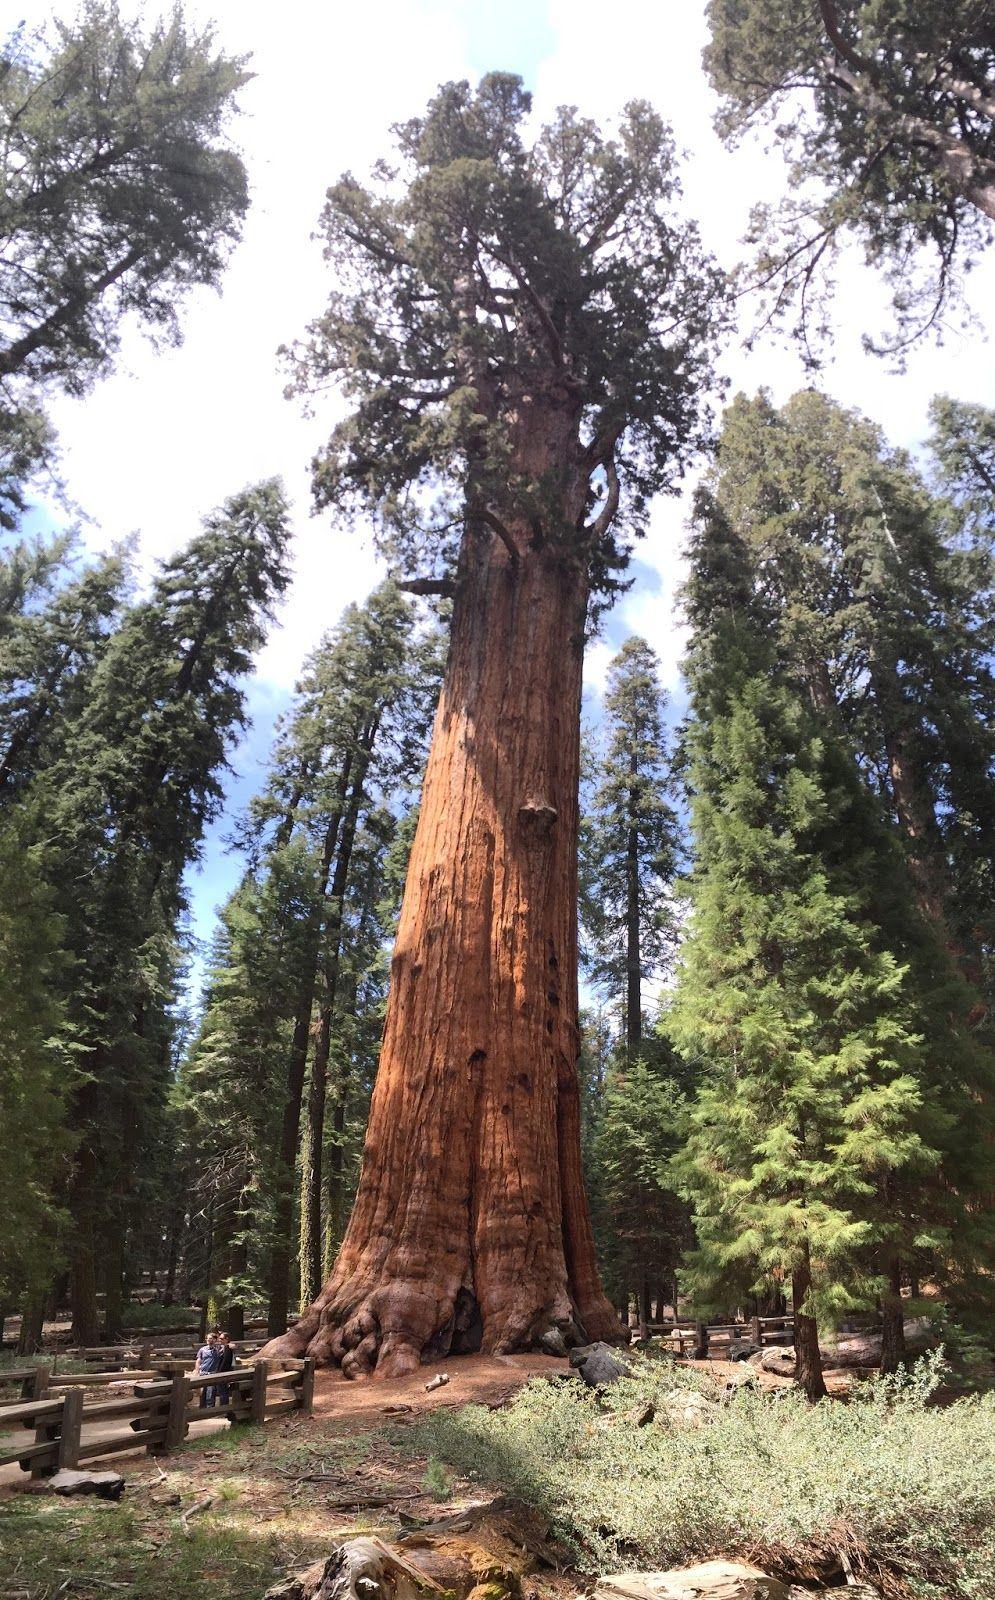 Sherman tábornok fája (General Sherman Tree) egy óriás mamutfenyő